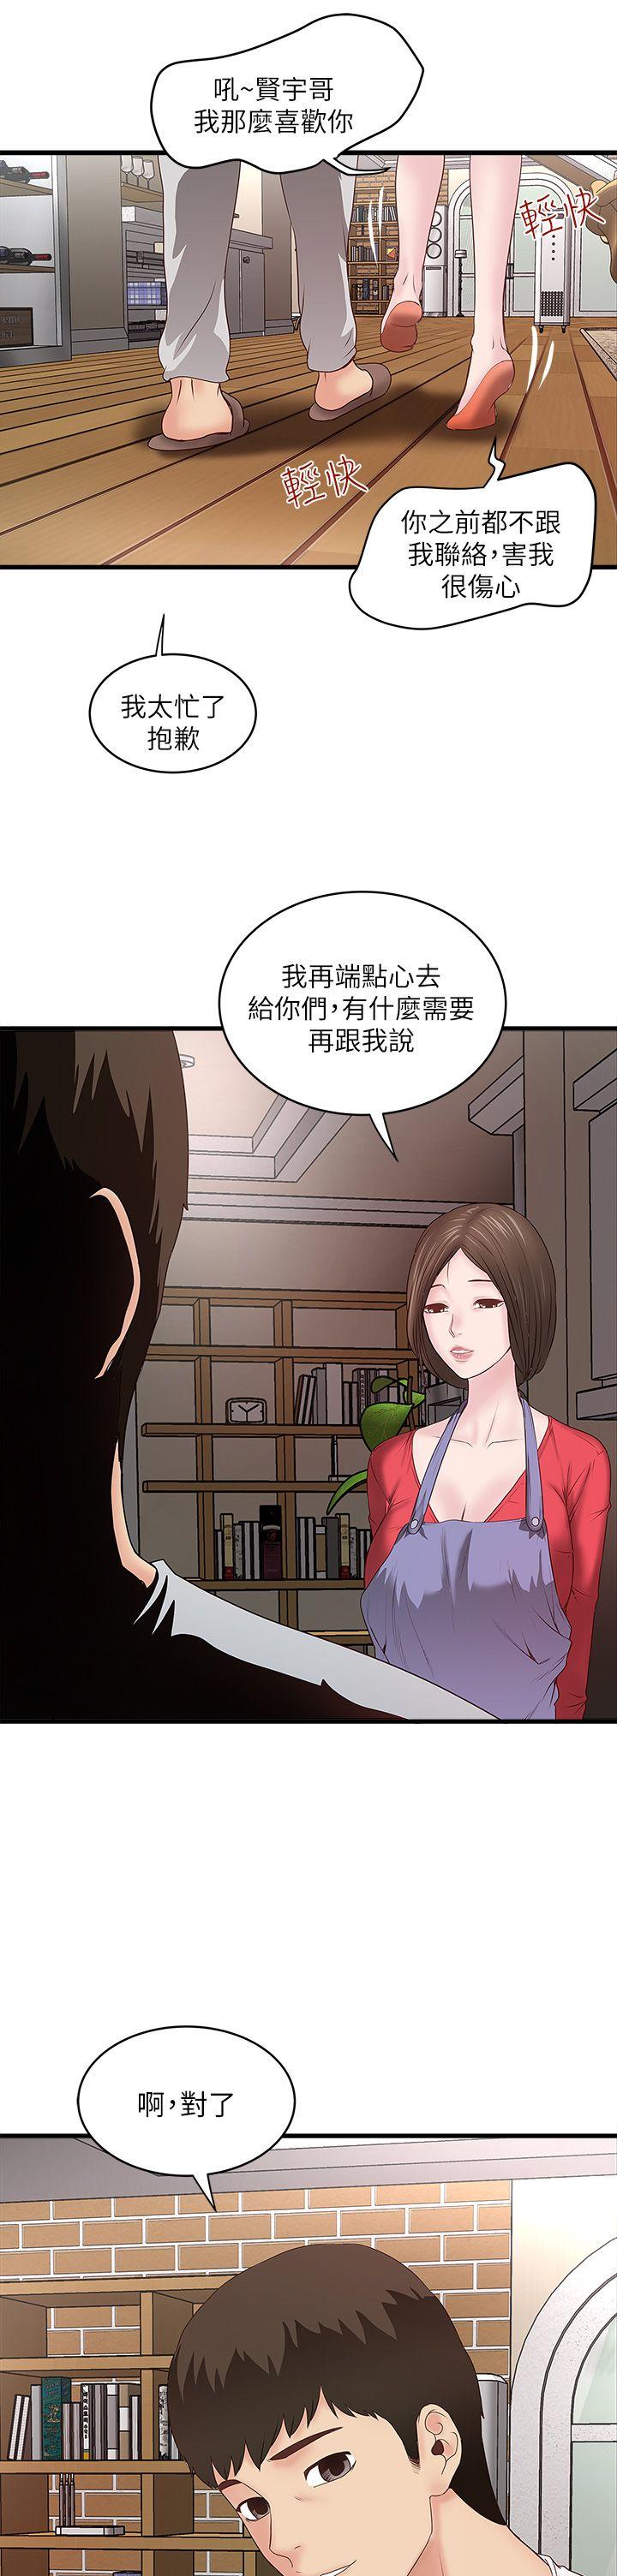 韩国污漫画 下女,初希 第4话-意外的画面 46